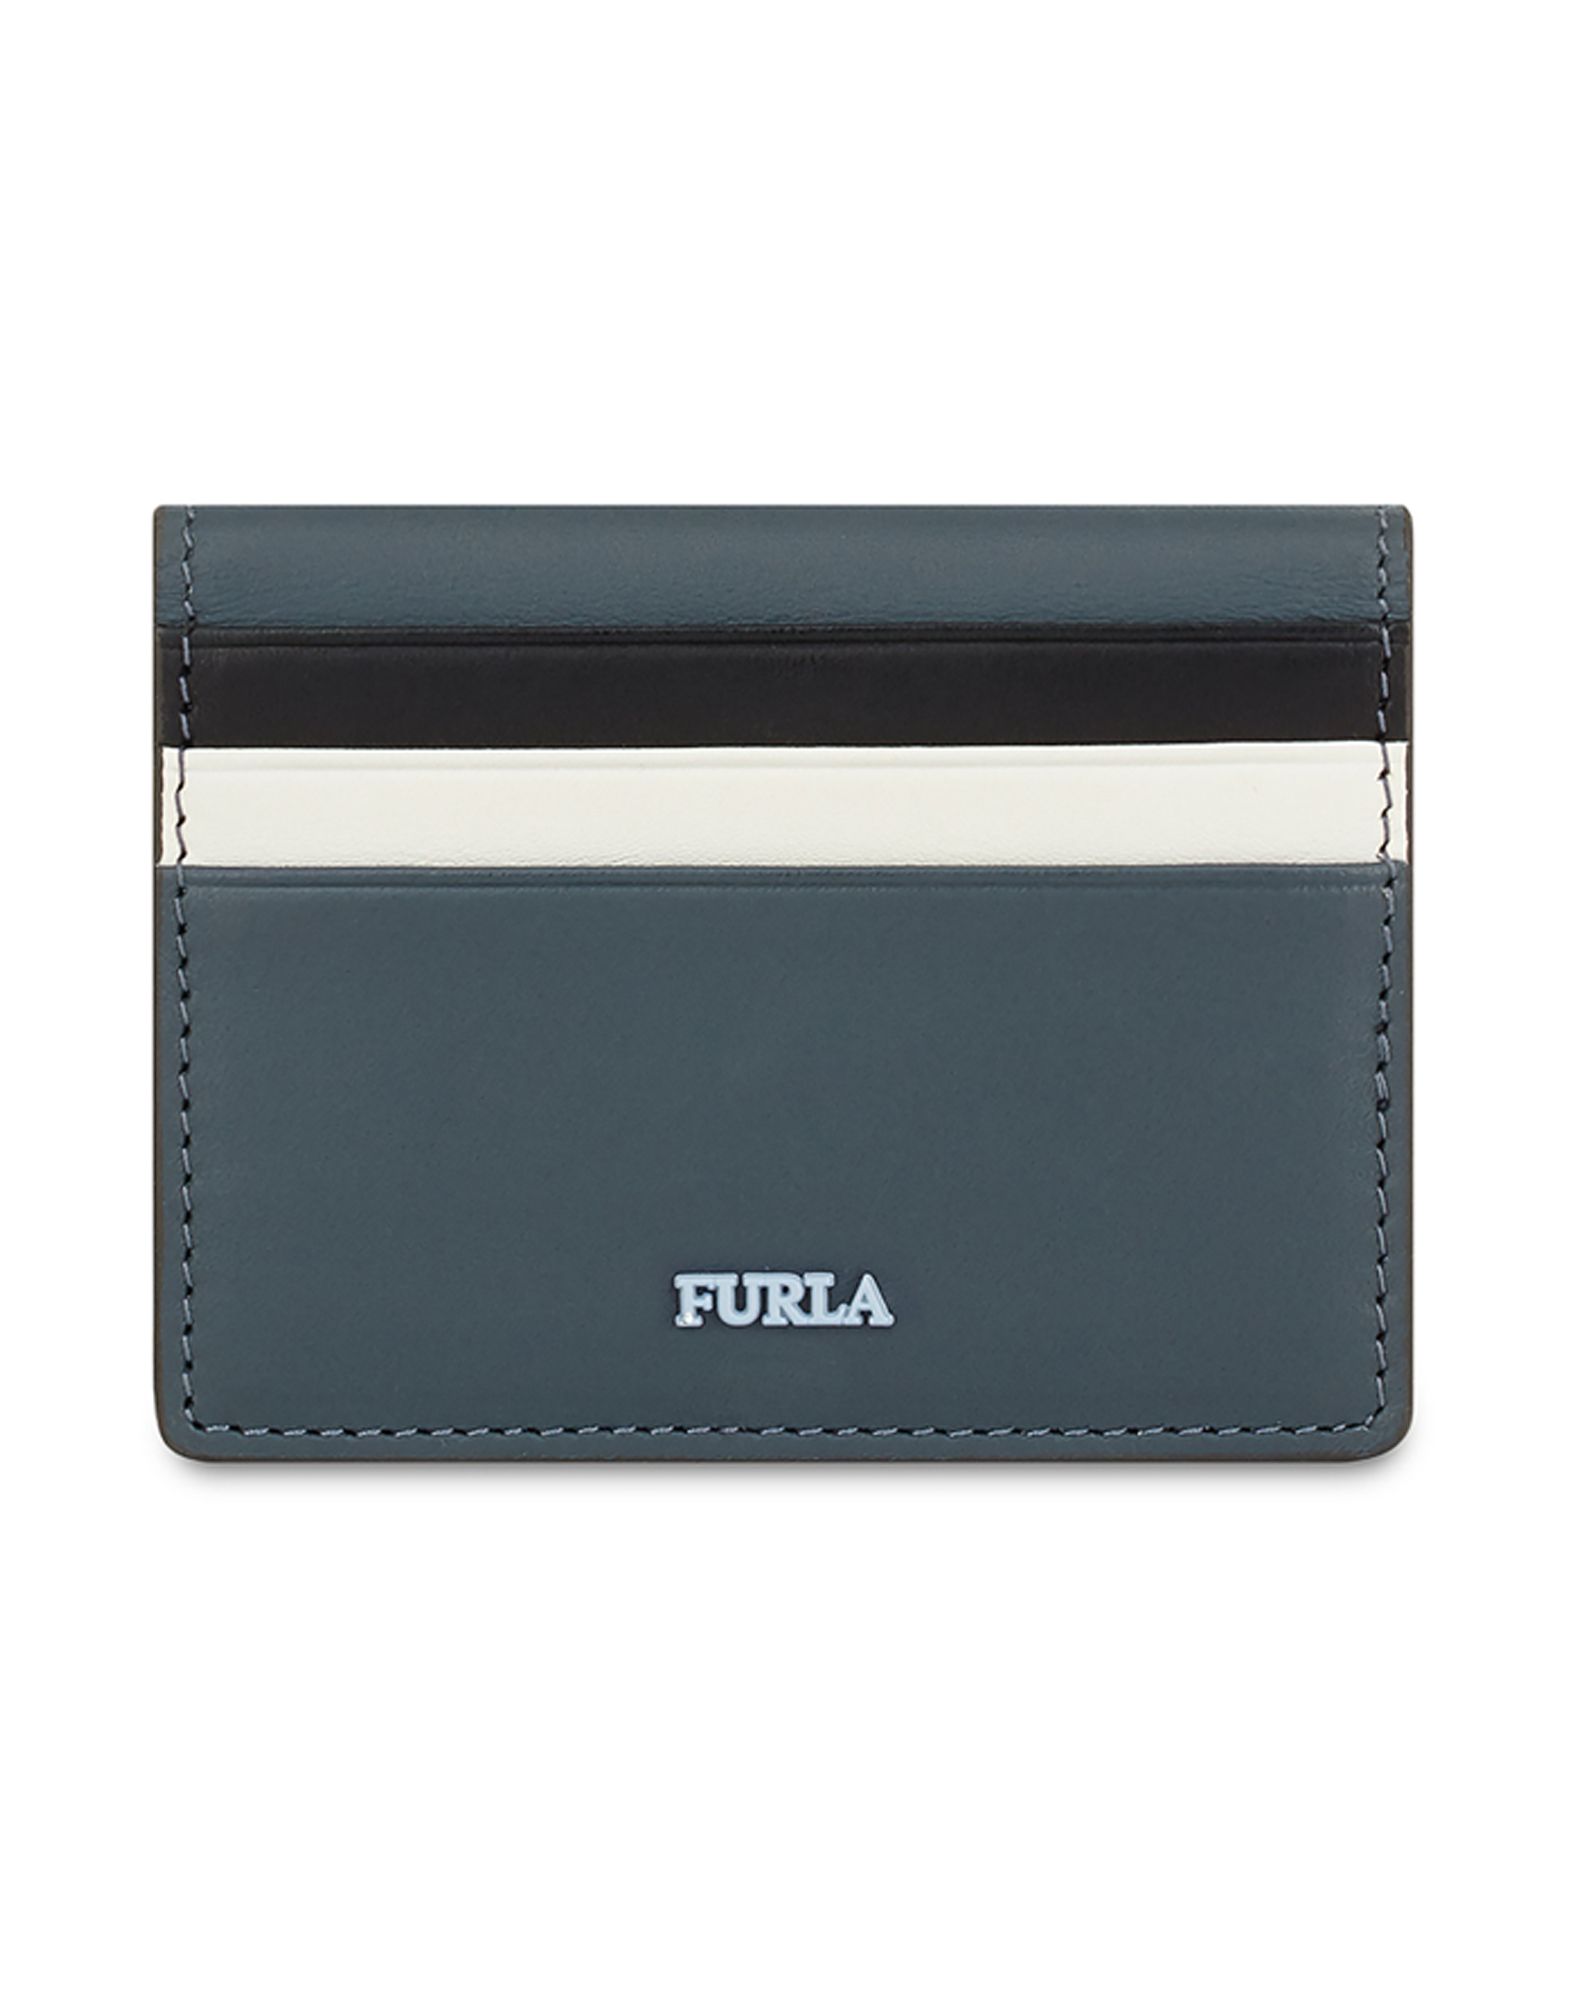 《送料無料》FURLA レディース ドキュメントホルダー 鉛色 革 100% REALE S CREDIT CARD CASE